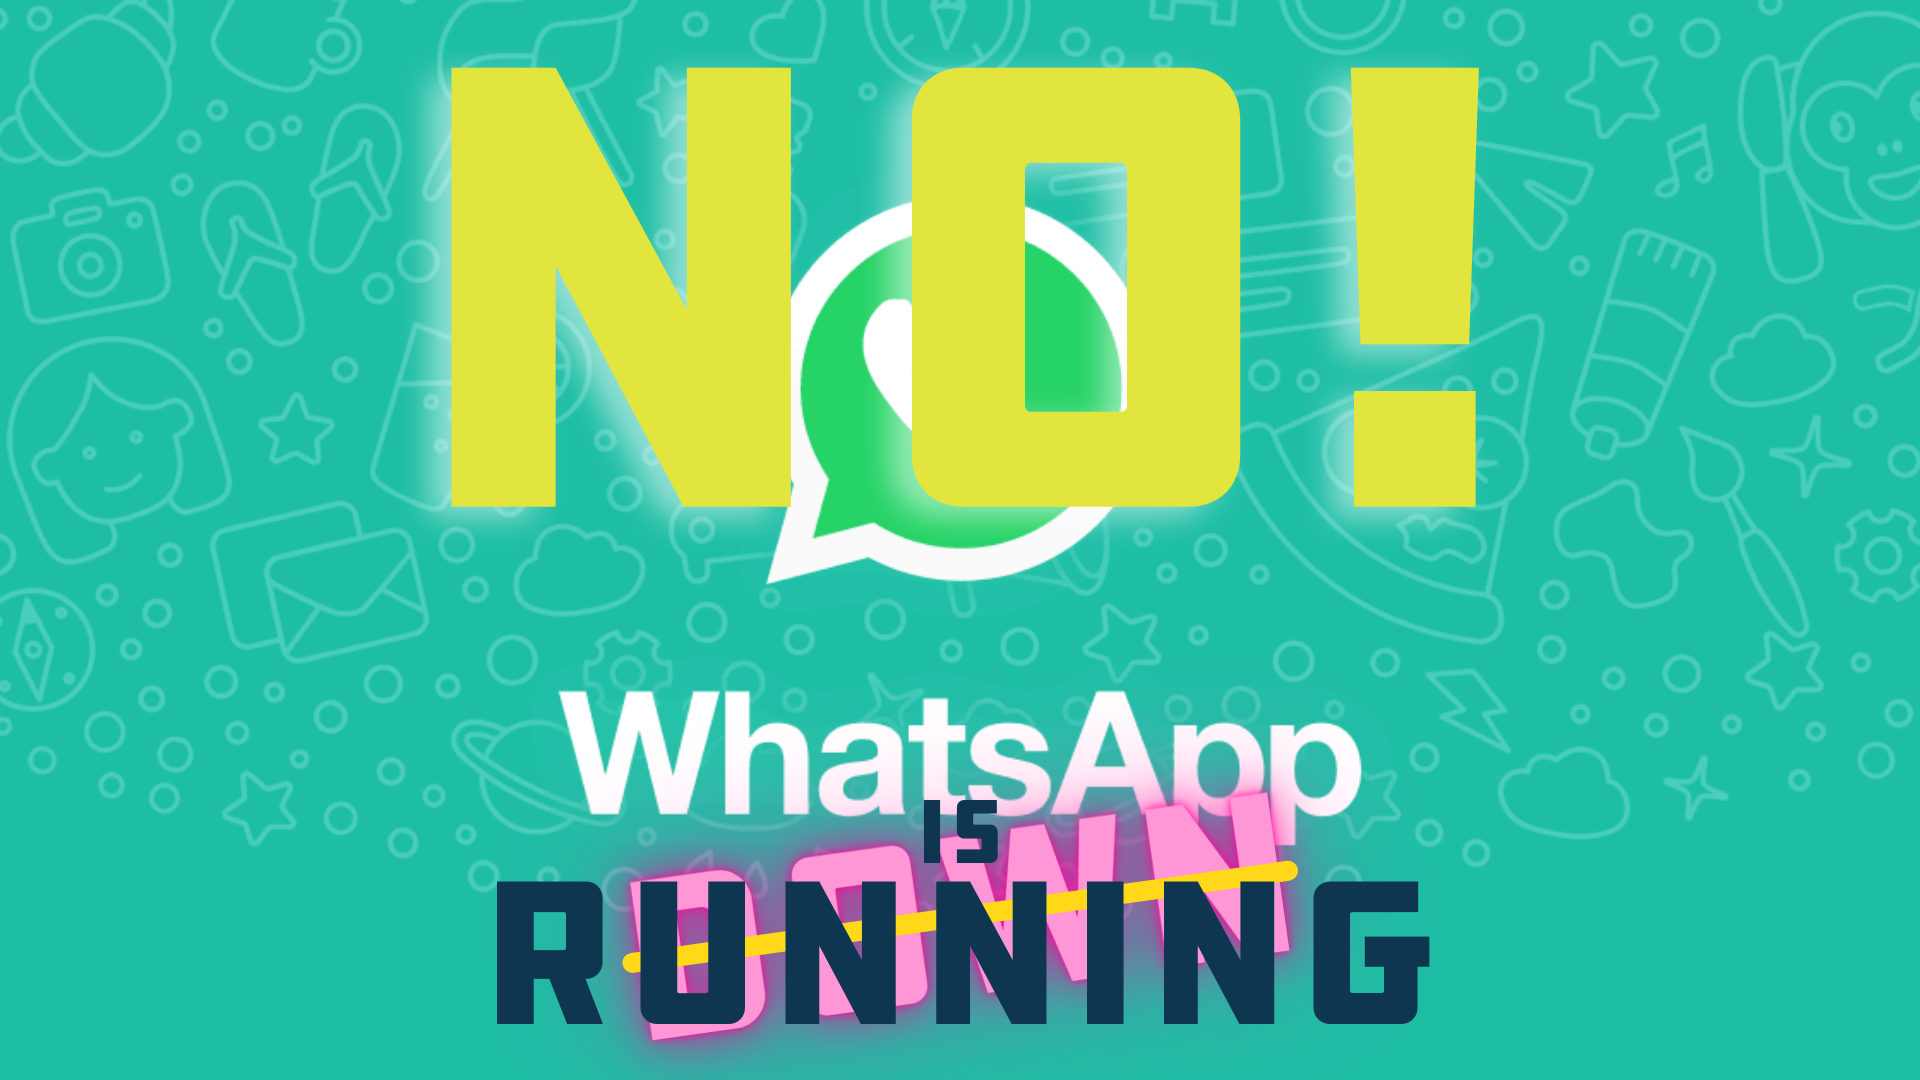 WhatsApp is Running